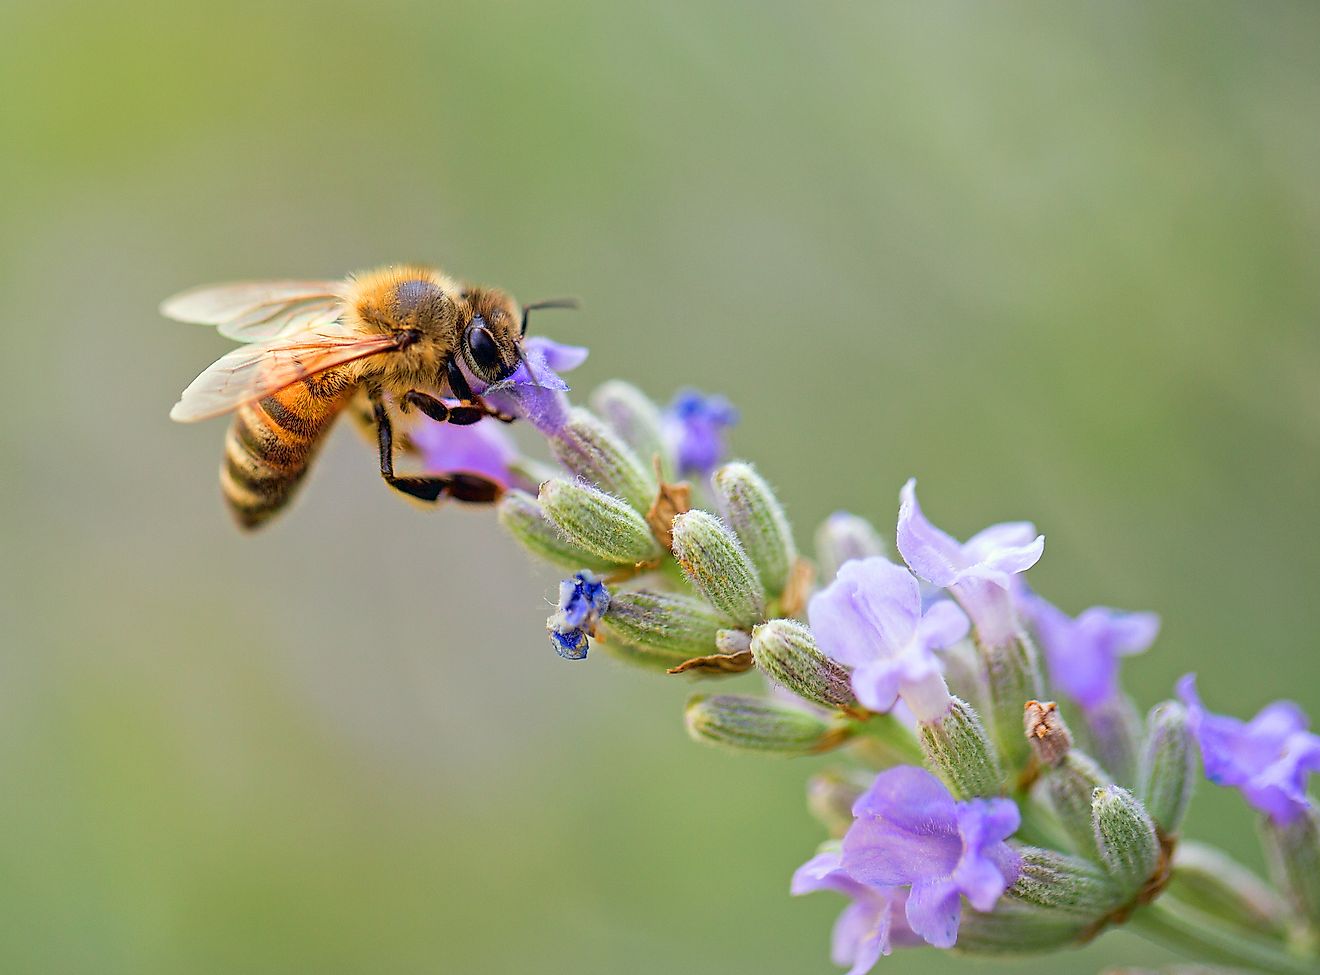 A honeybee sucking nectar from a flower.